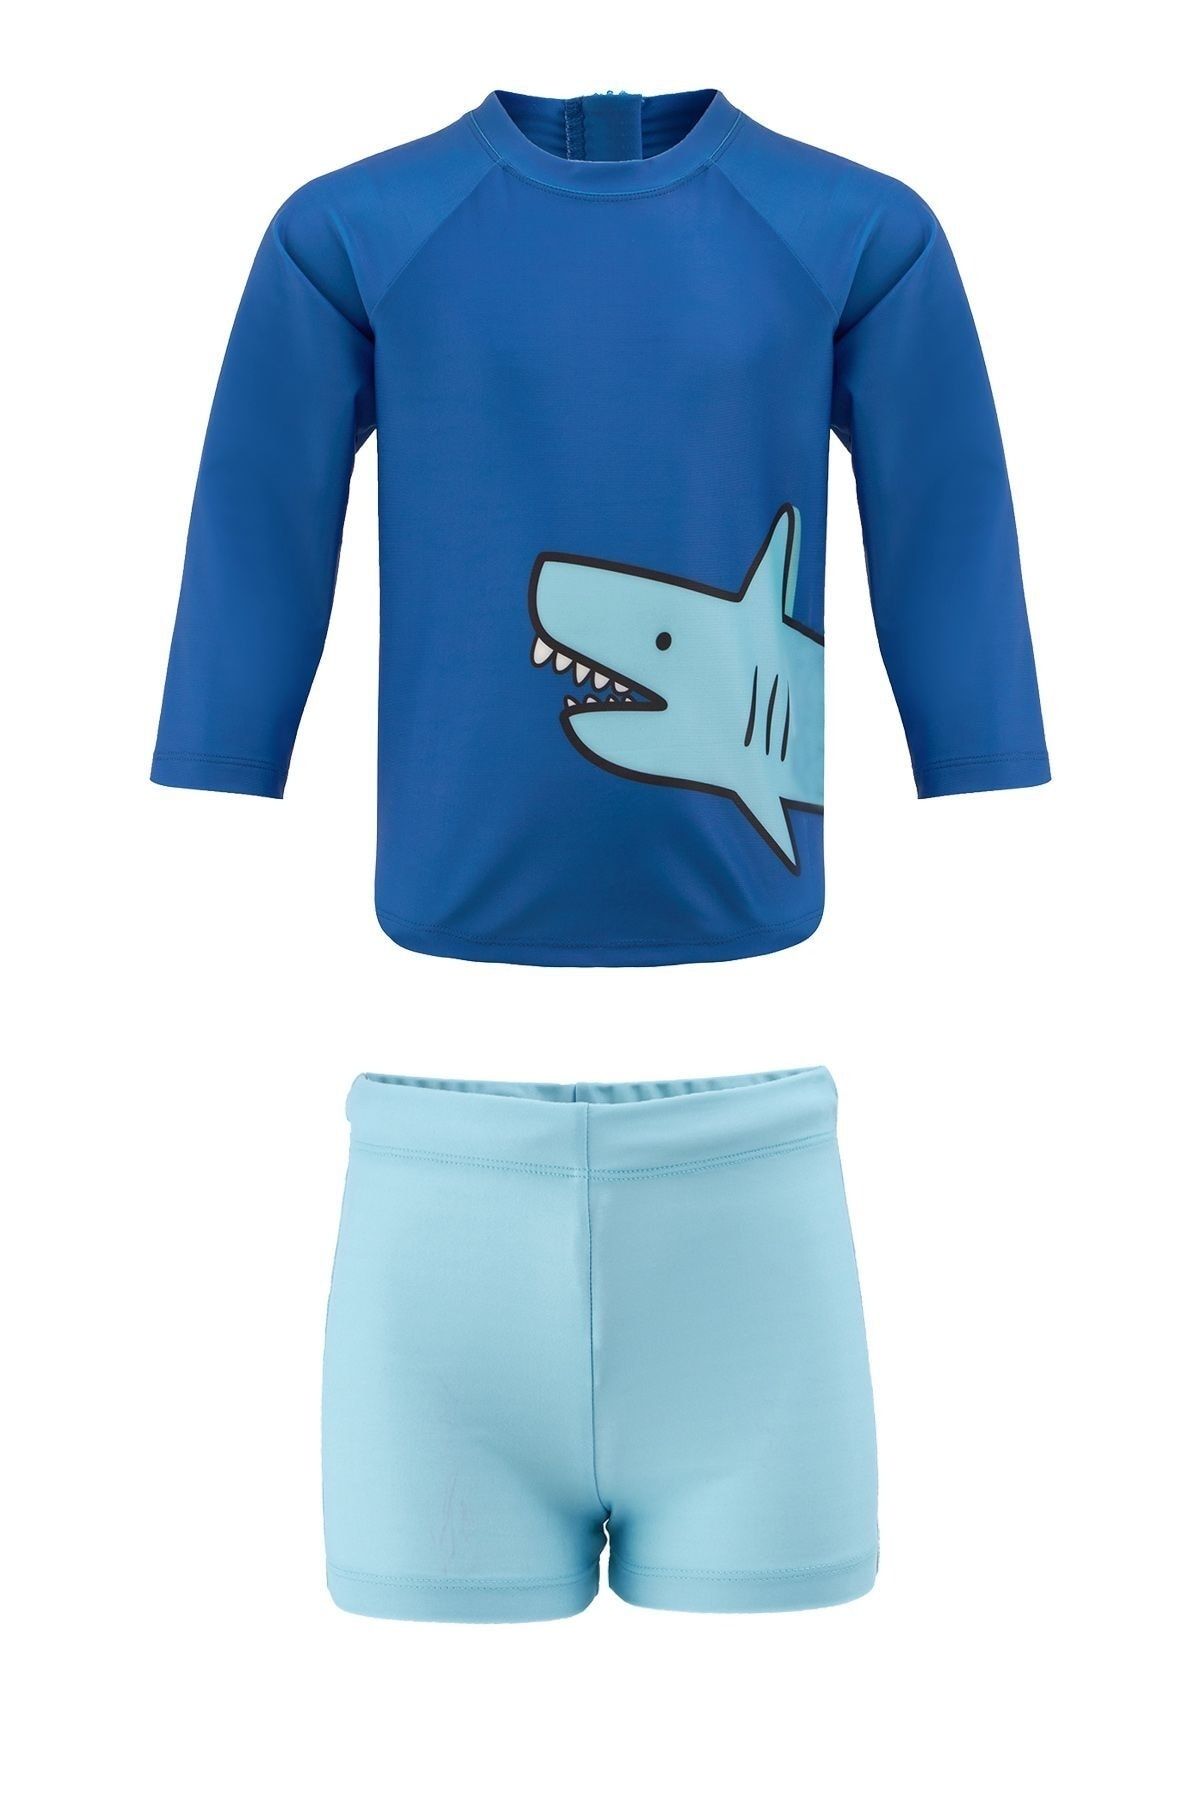 Remsa Mayo Şort Tişört Takım Kısa Kollu Köpek Balığı Çocuk Bebek Mayo 5384 Mavi